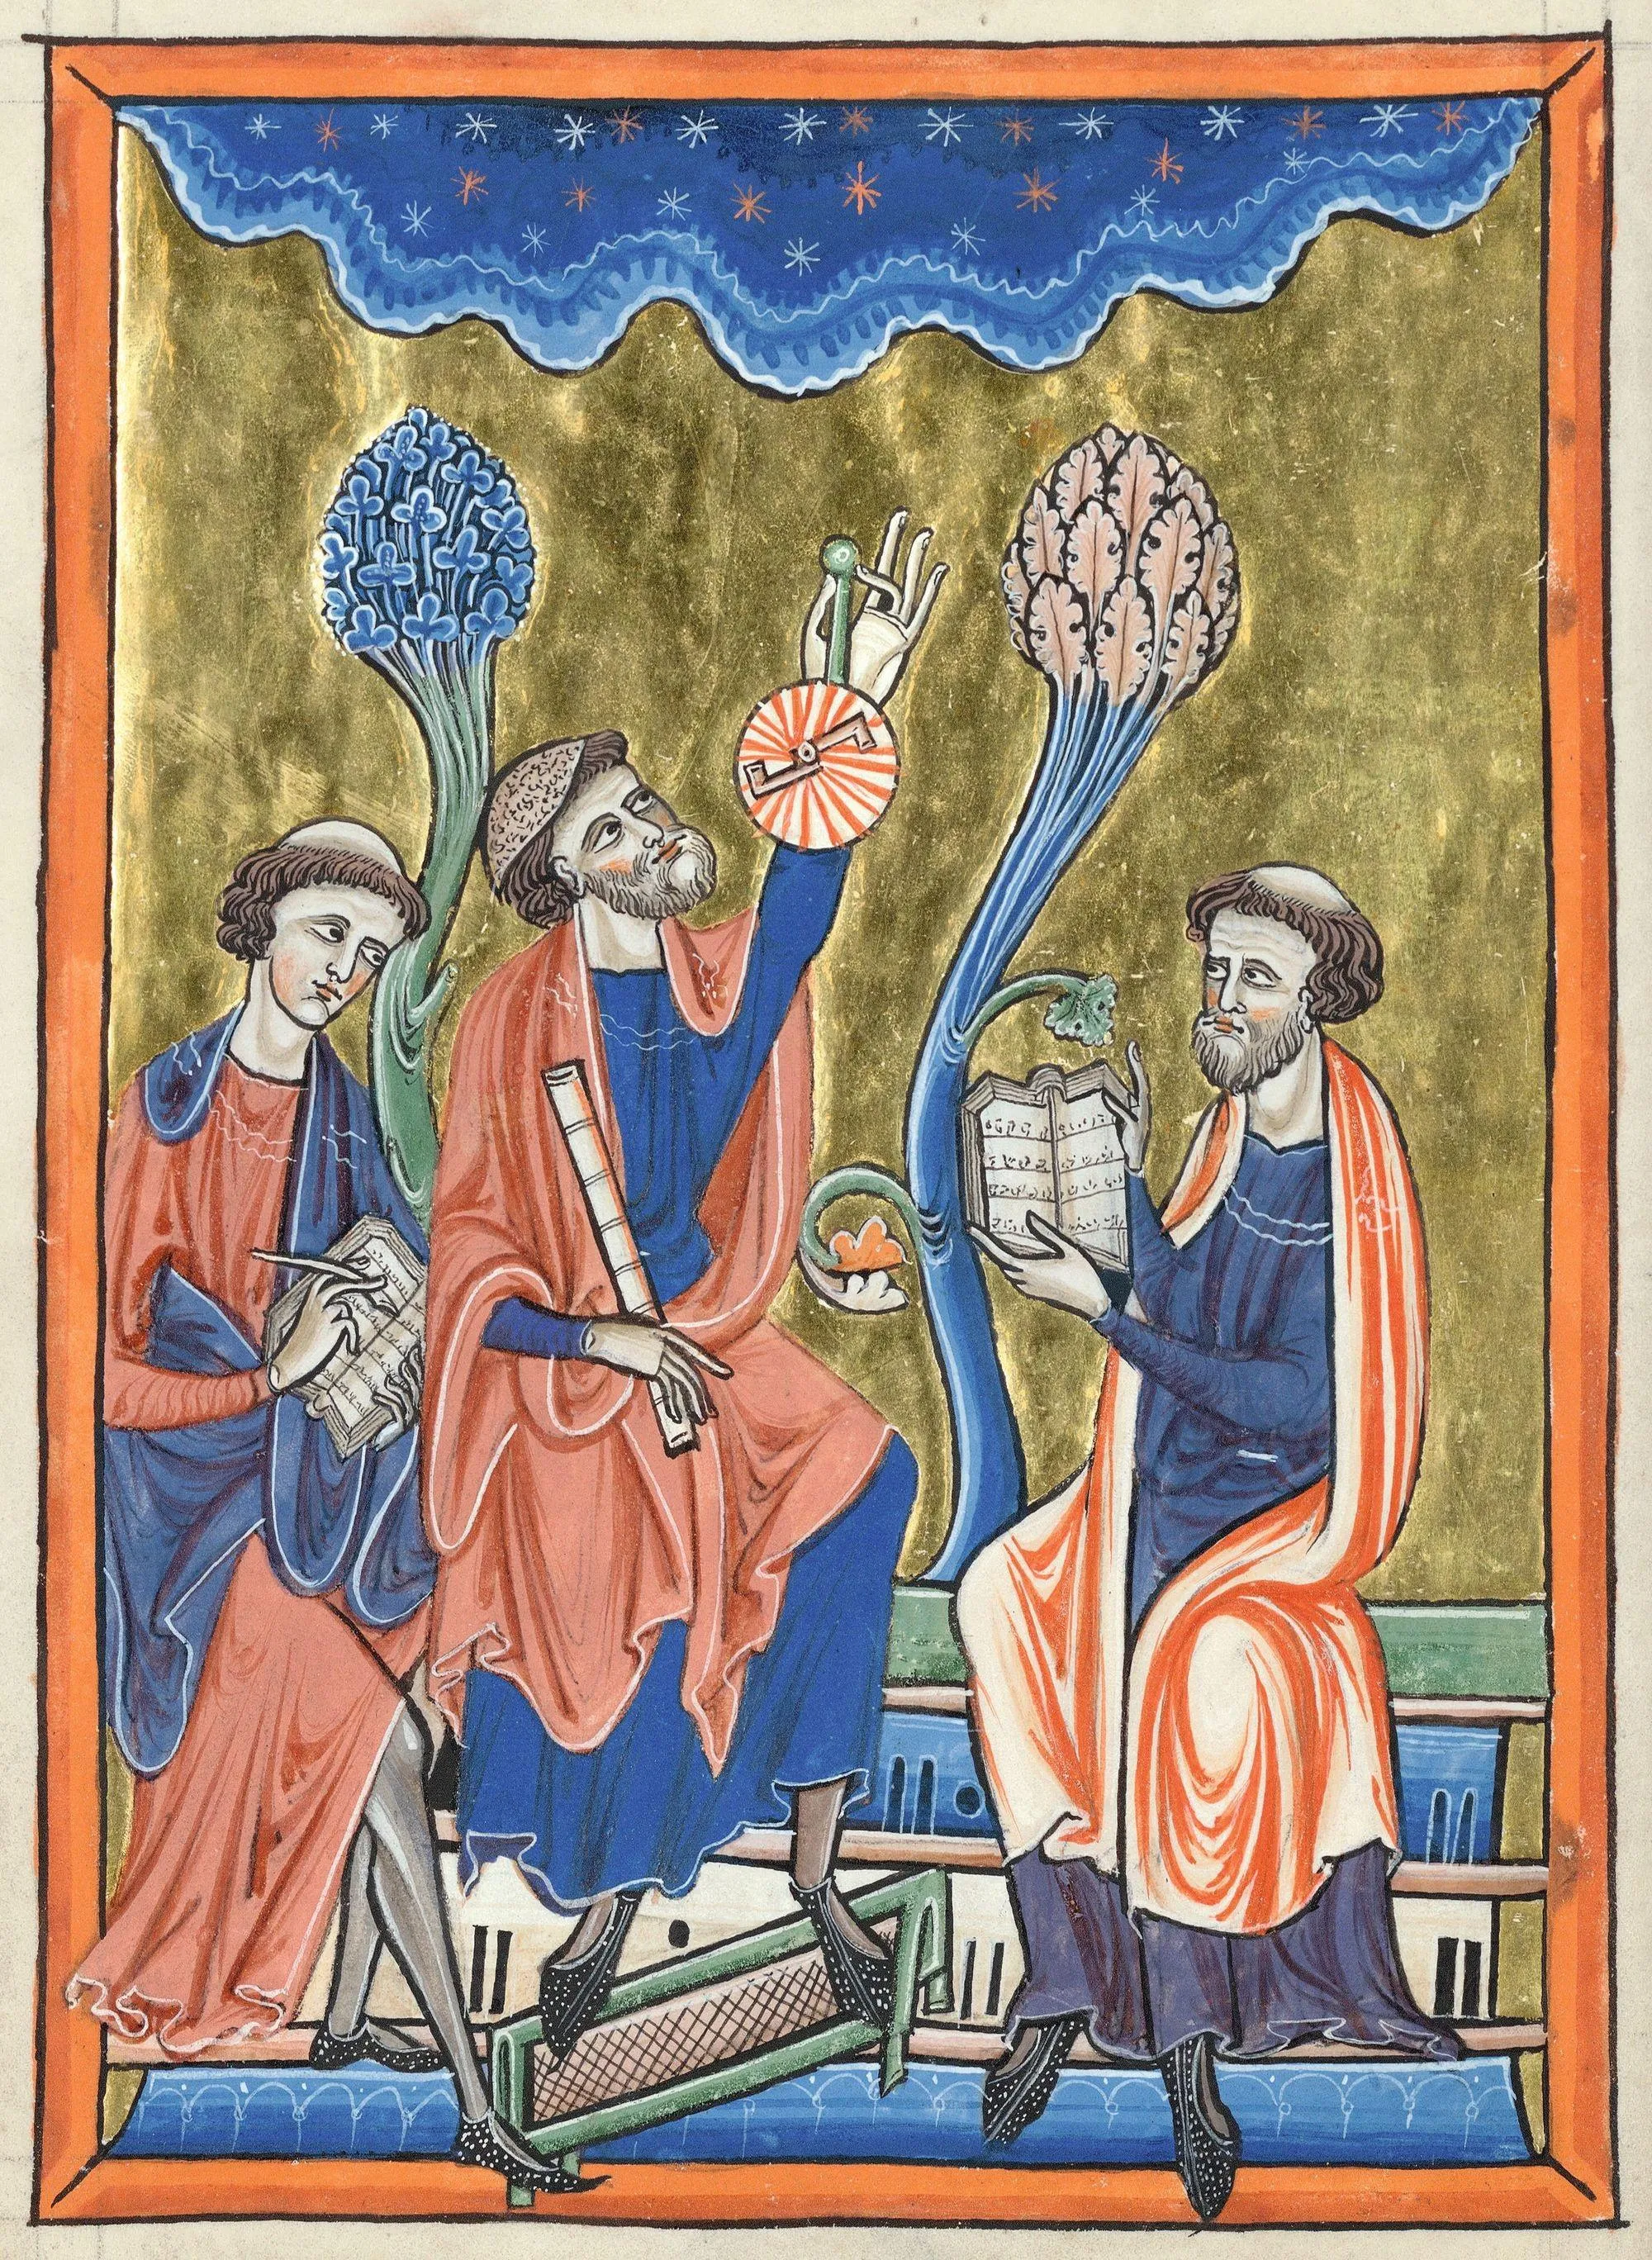 « Abraham Ibn Ezra enseigne l'astronomie à des clercs latins », enluminure, 1225-1235, 19,2 x 13,7 cm, Psautier dit de Blanche de Castille, bibliothèque de l'Arsenal, Paris, ms. 1186, f. 1v.